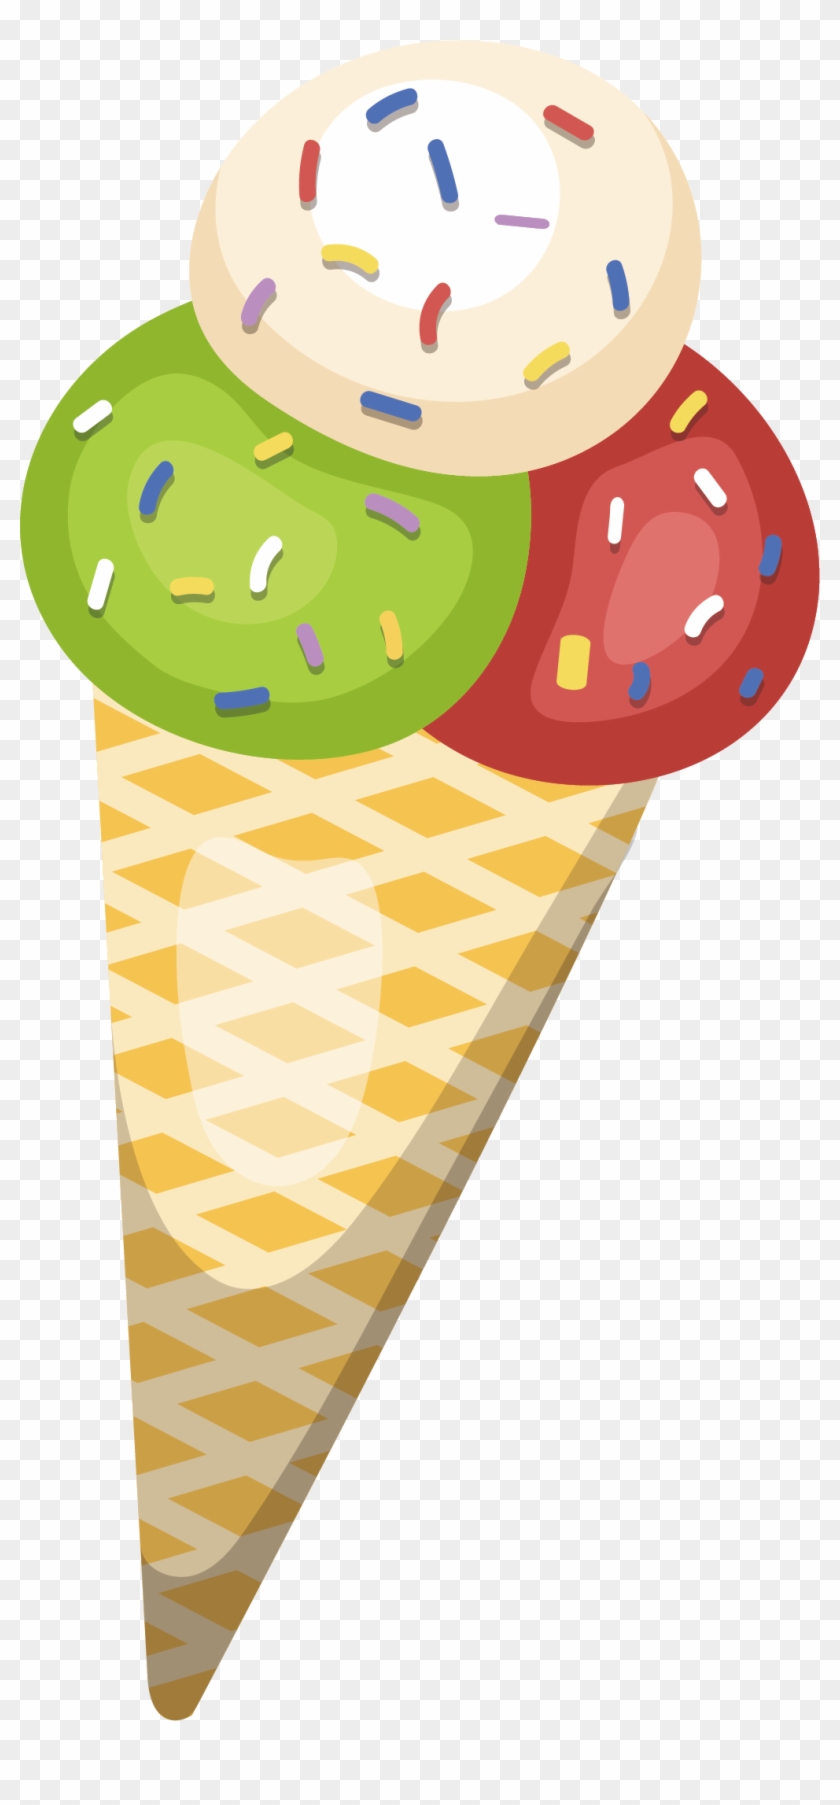 Ice Cream Cone Illustration - Ice Cream Cone Illustration #546982